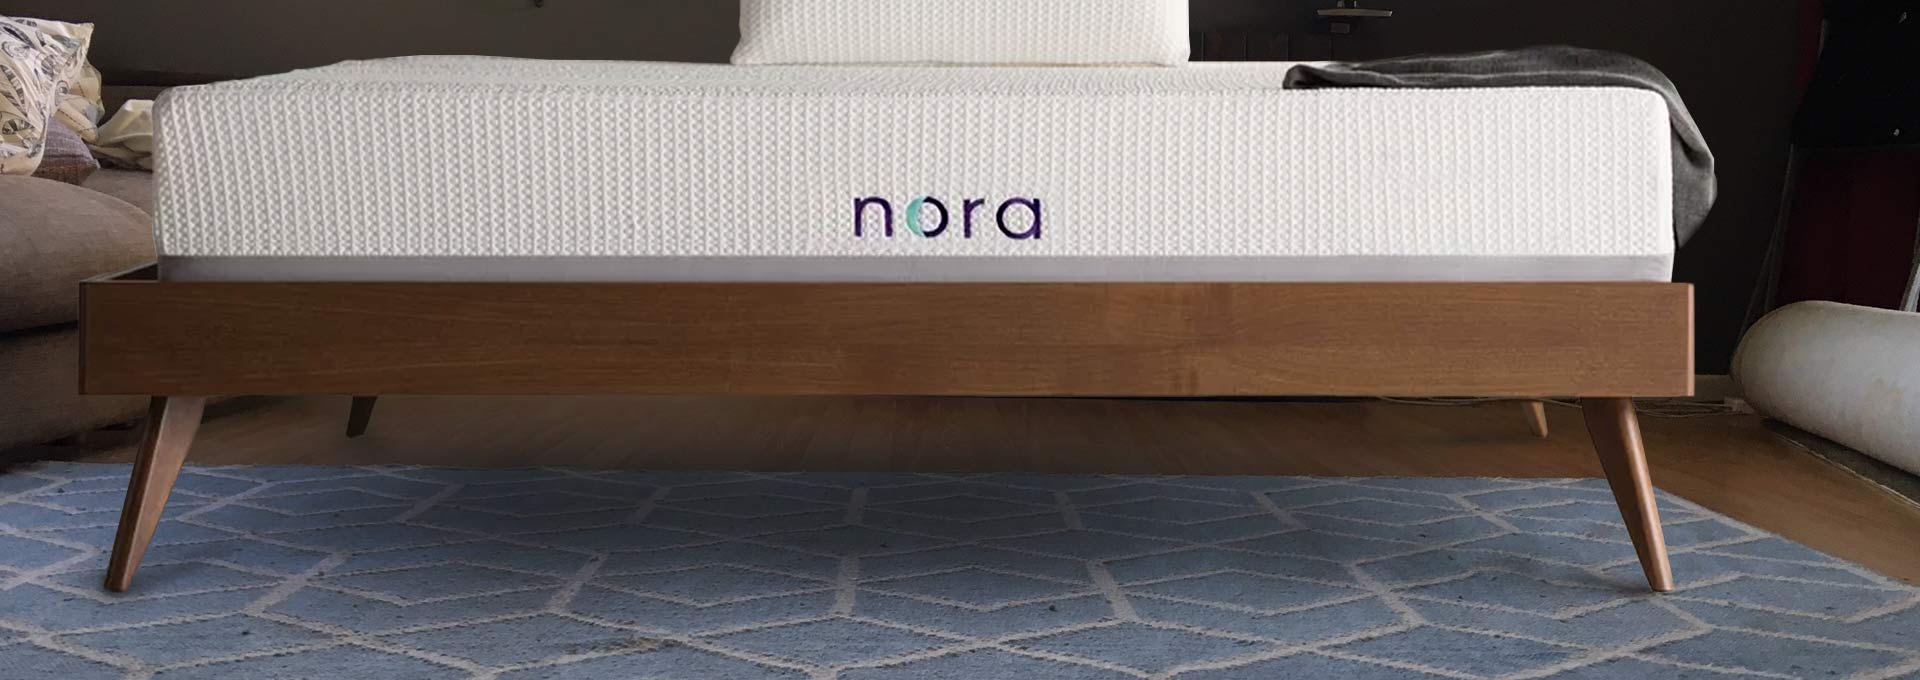 Nora mattress review wayfair